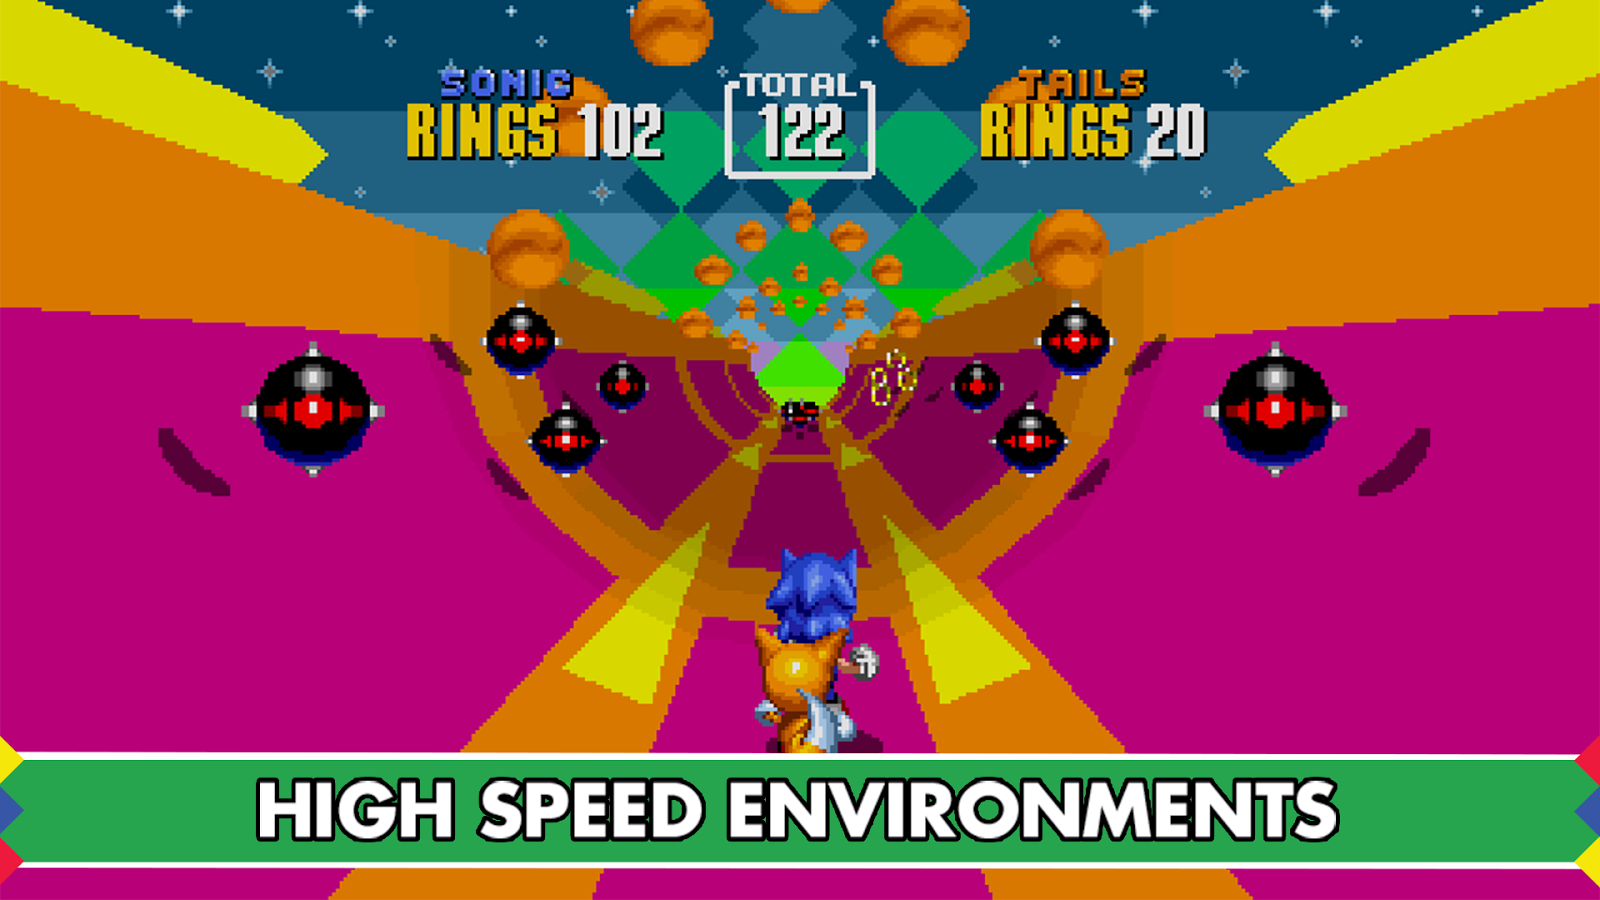  لعبه Sonic The Hedgehog 2 v.3.1.5 مدفوعه كامله Ytkd1ef2R1y7E8hK8vy0GFhQHAj2vgiEwzJqC0muYLrRHqcAYwmrOHERE-61aKIK8tA=h900-rw